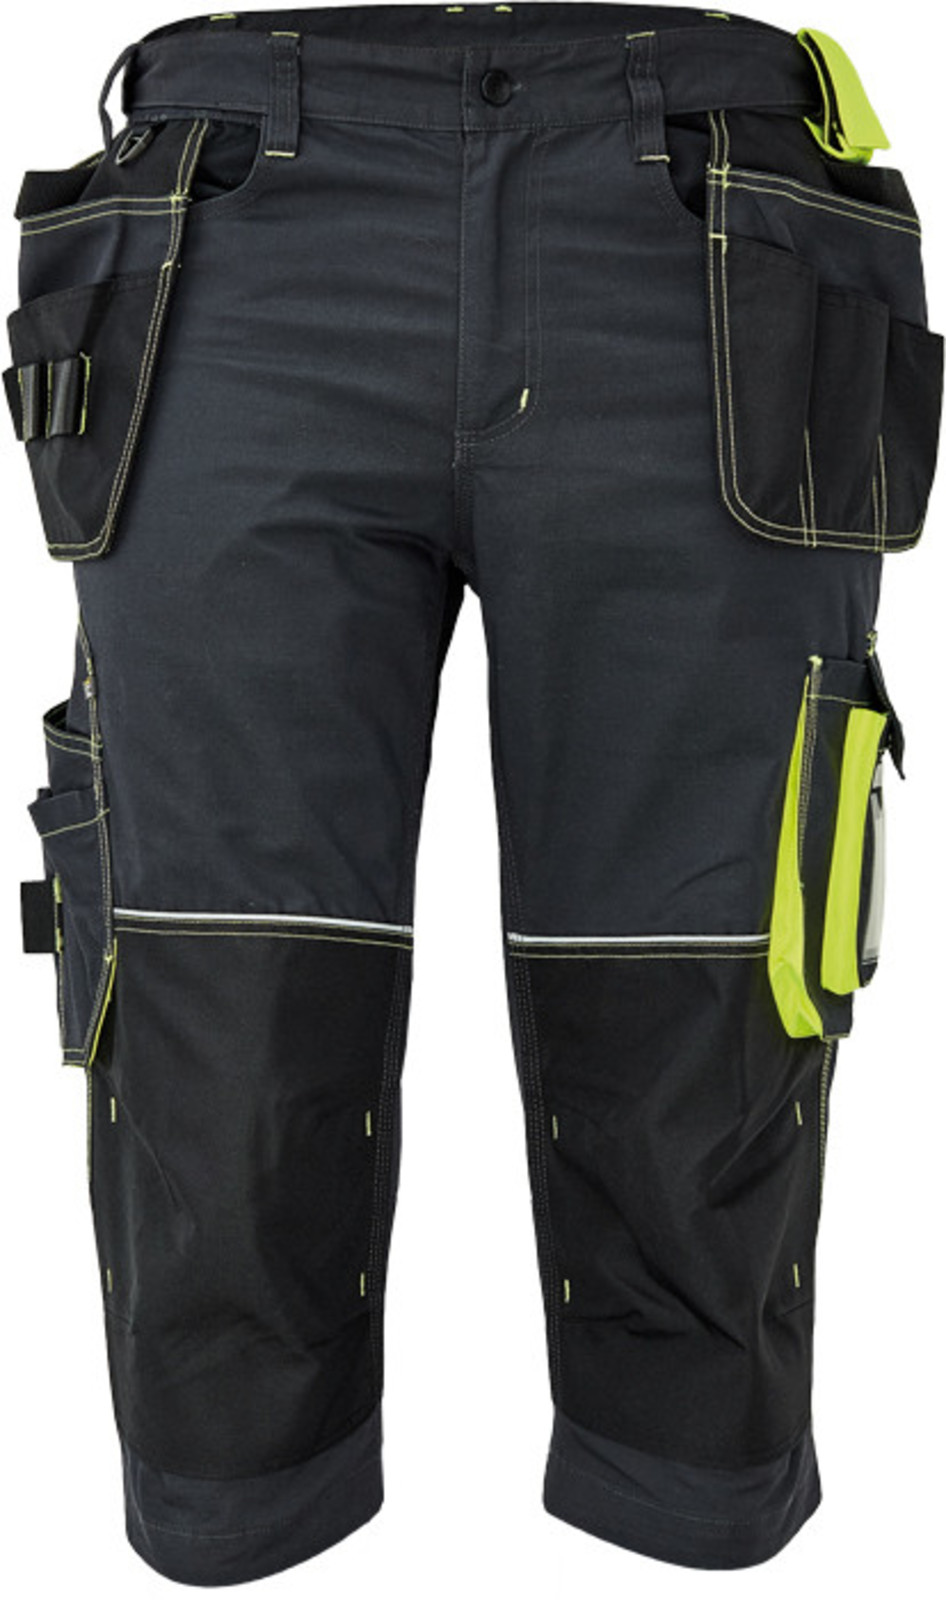 Pánske pracovné 3/4 nohavice Cerva Knoxfield 320 - veľkosť: 54, farba: antracit/žltá